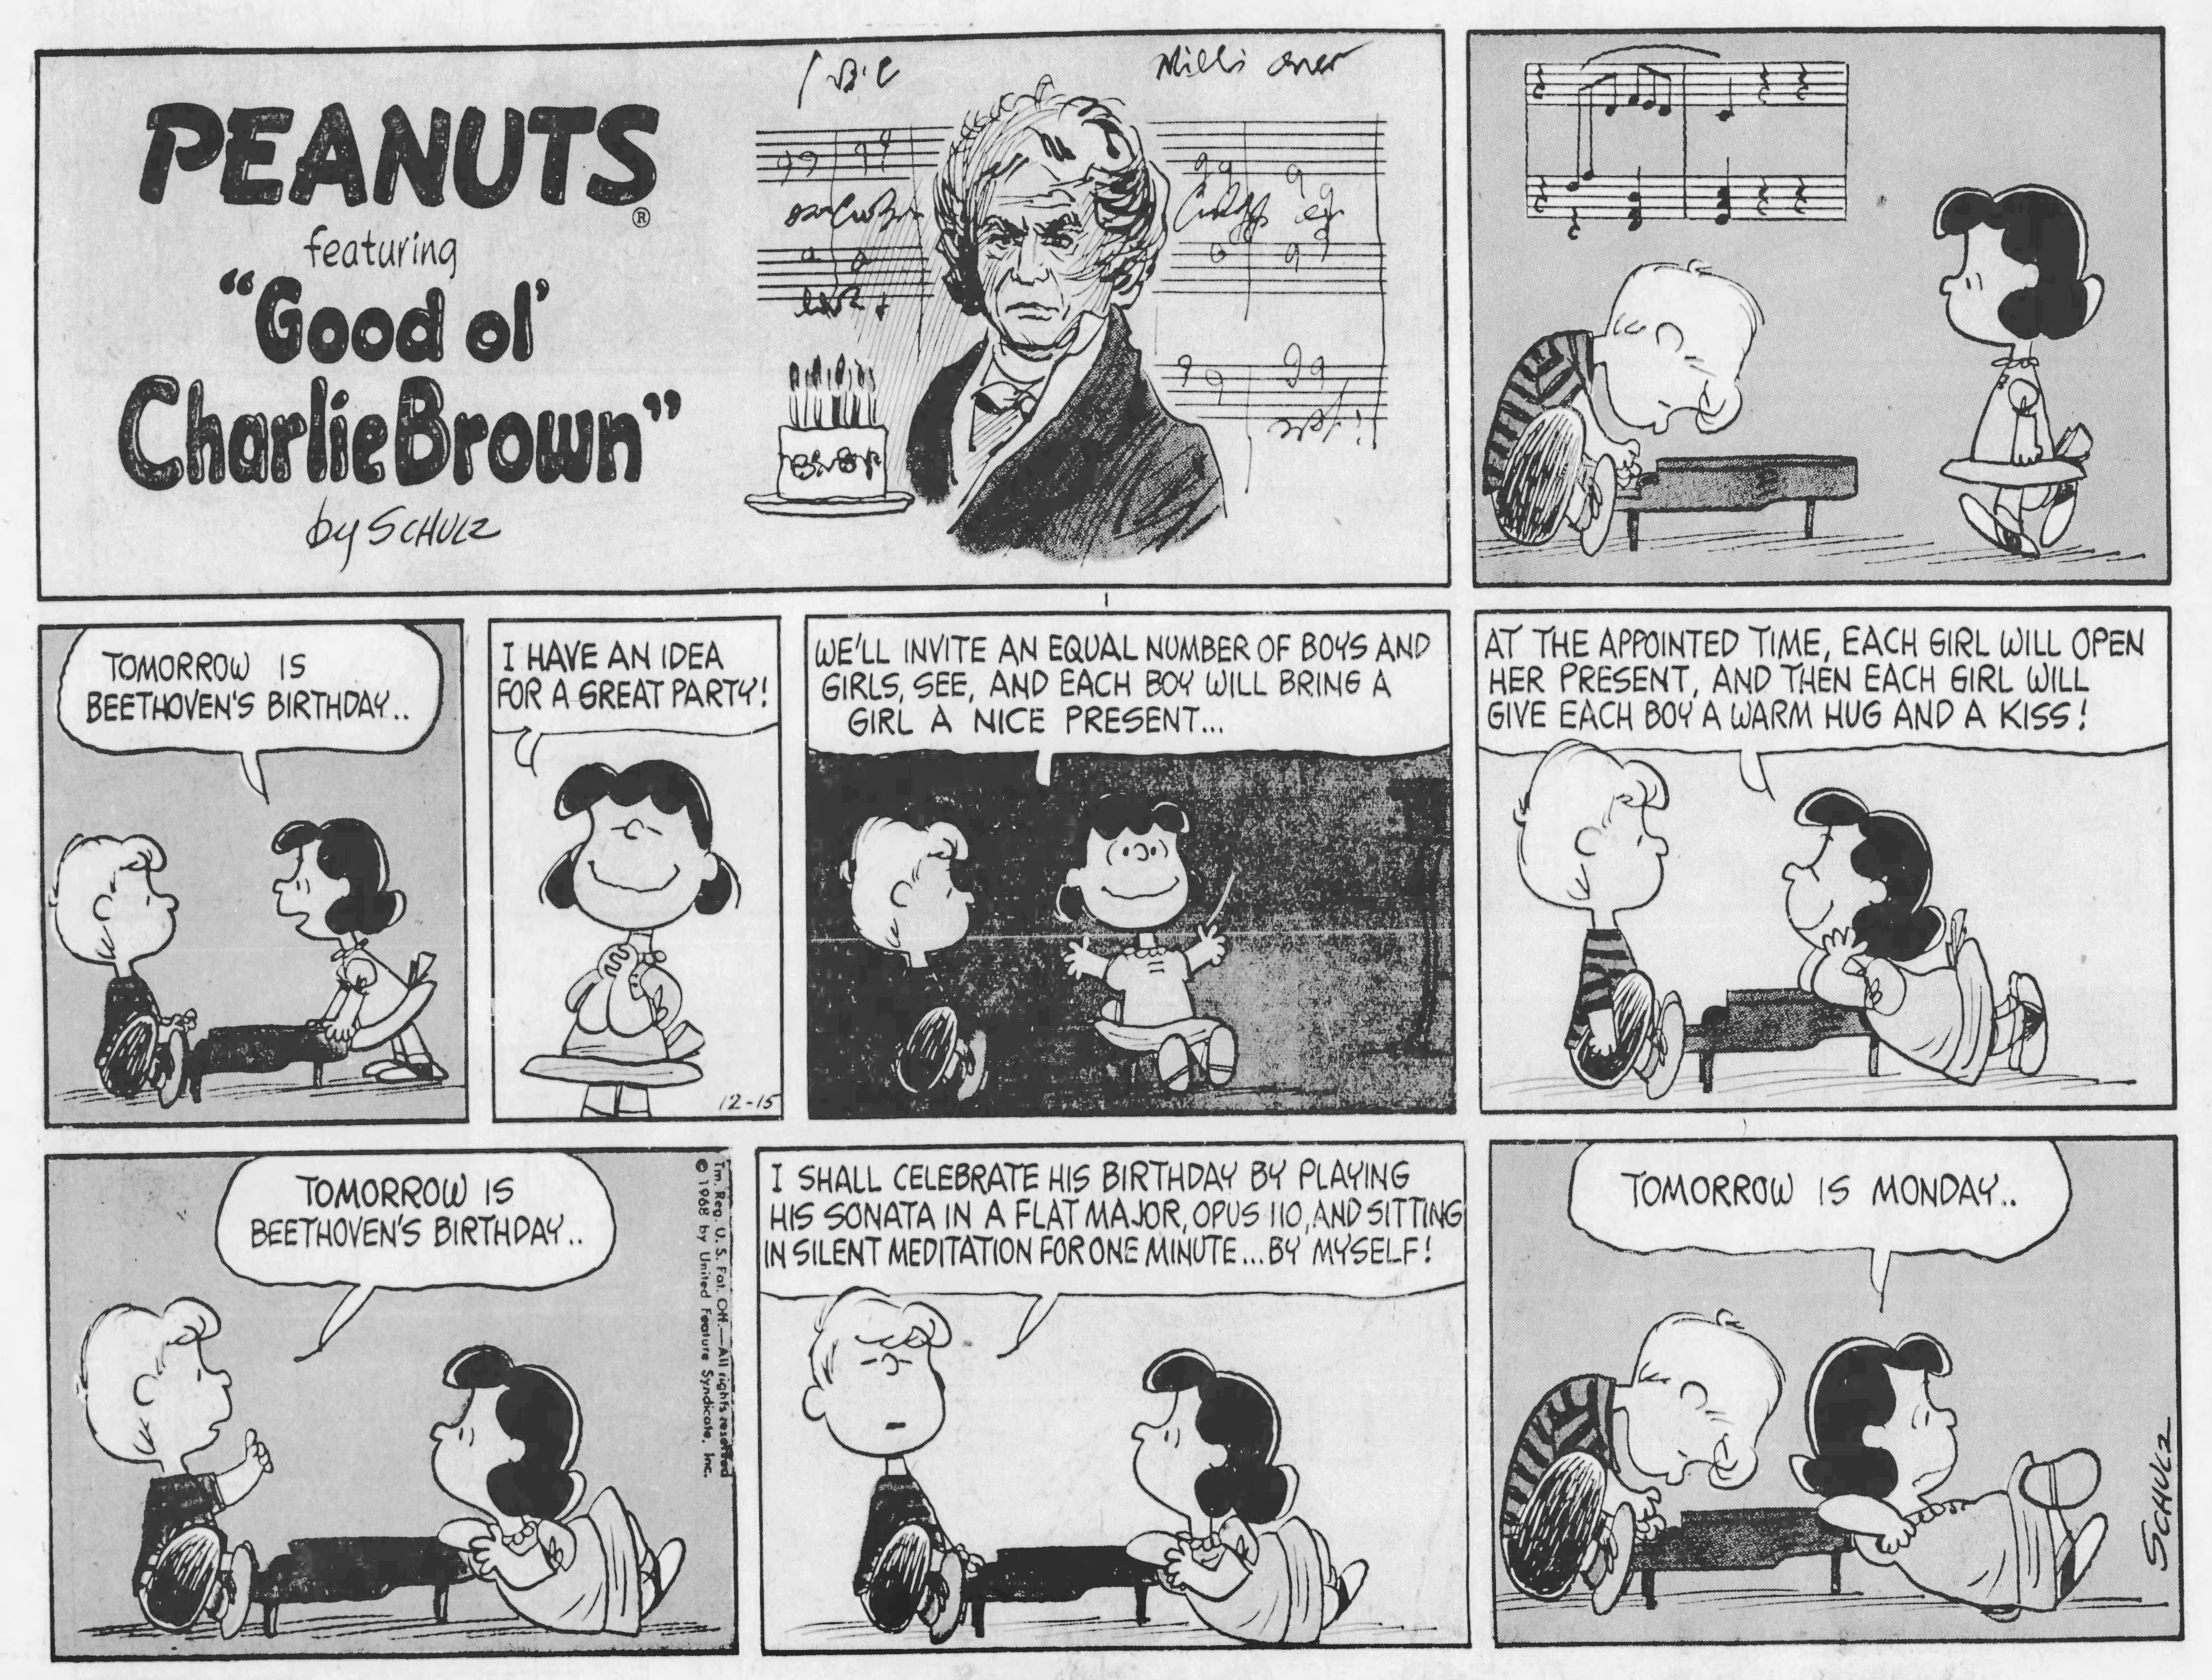 Peanuts, December 15, 1968